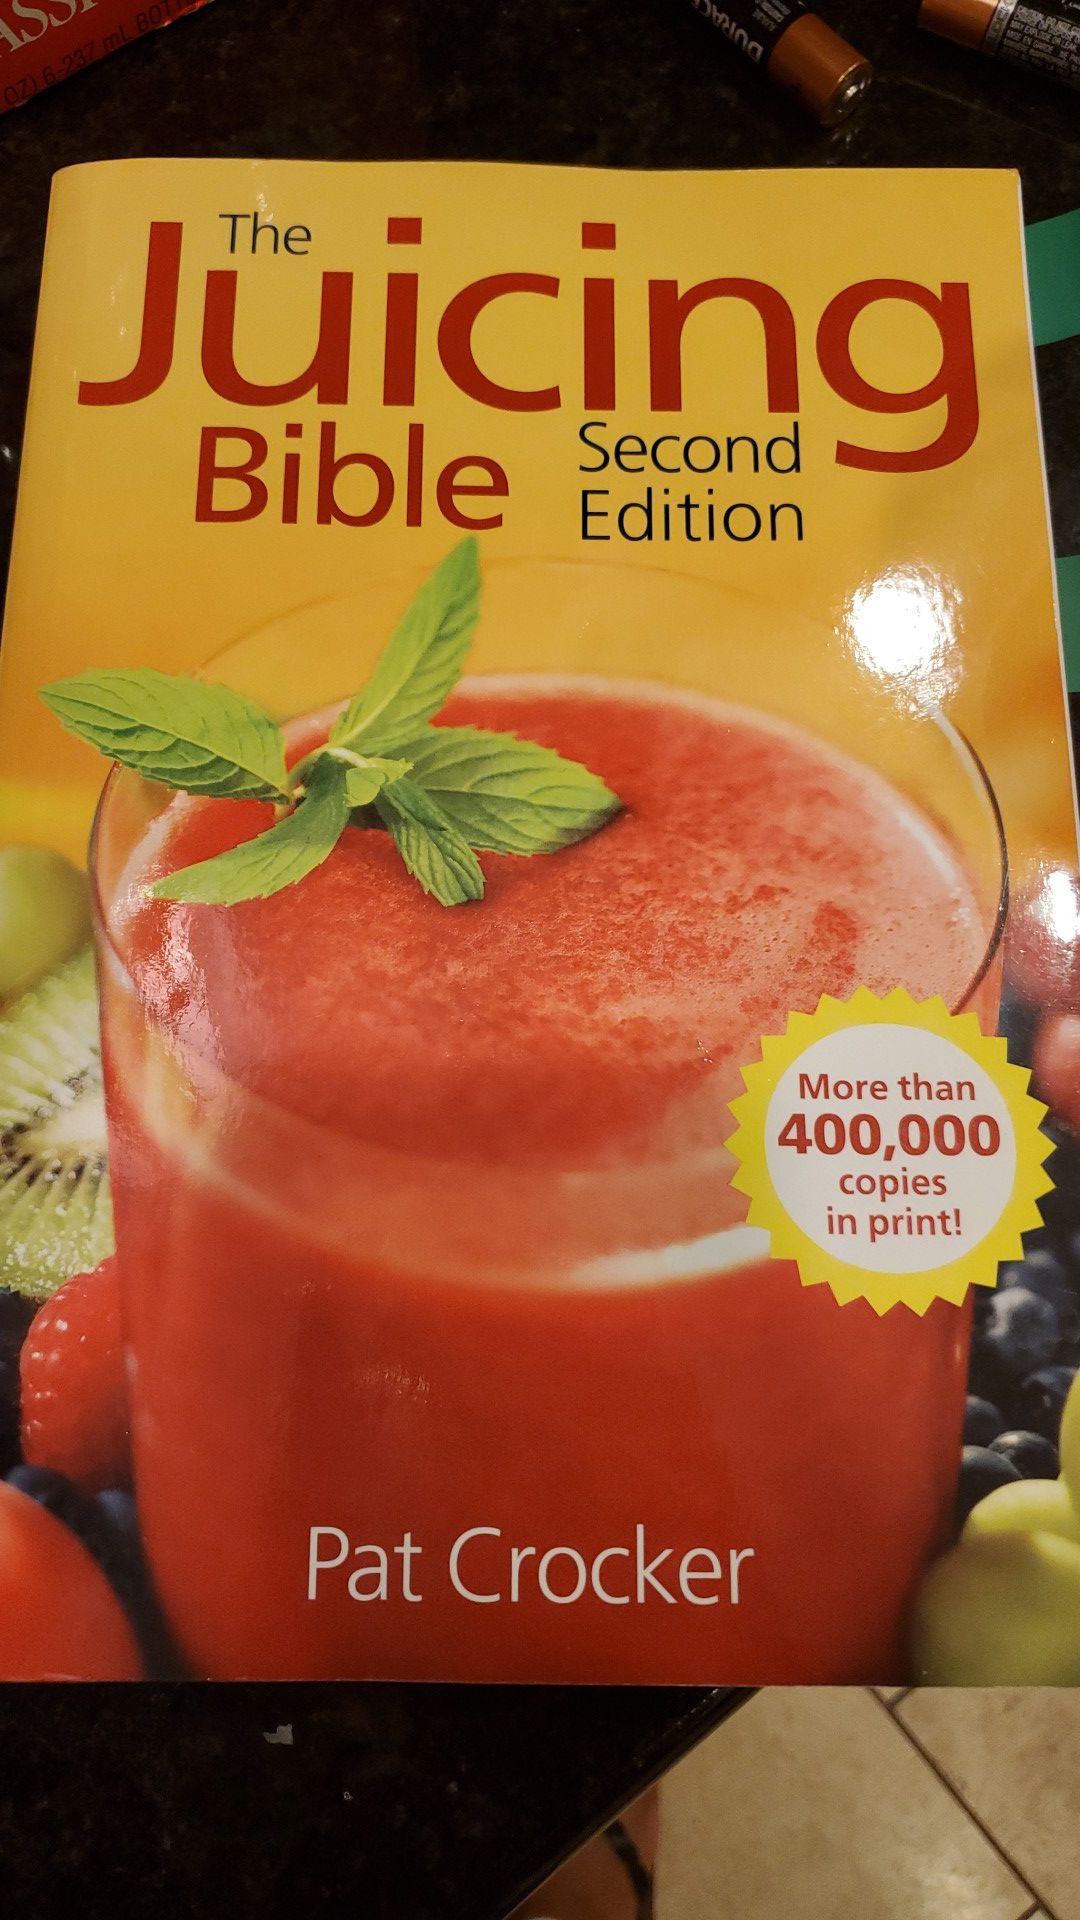 Recipe book for juicing